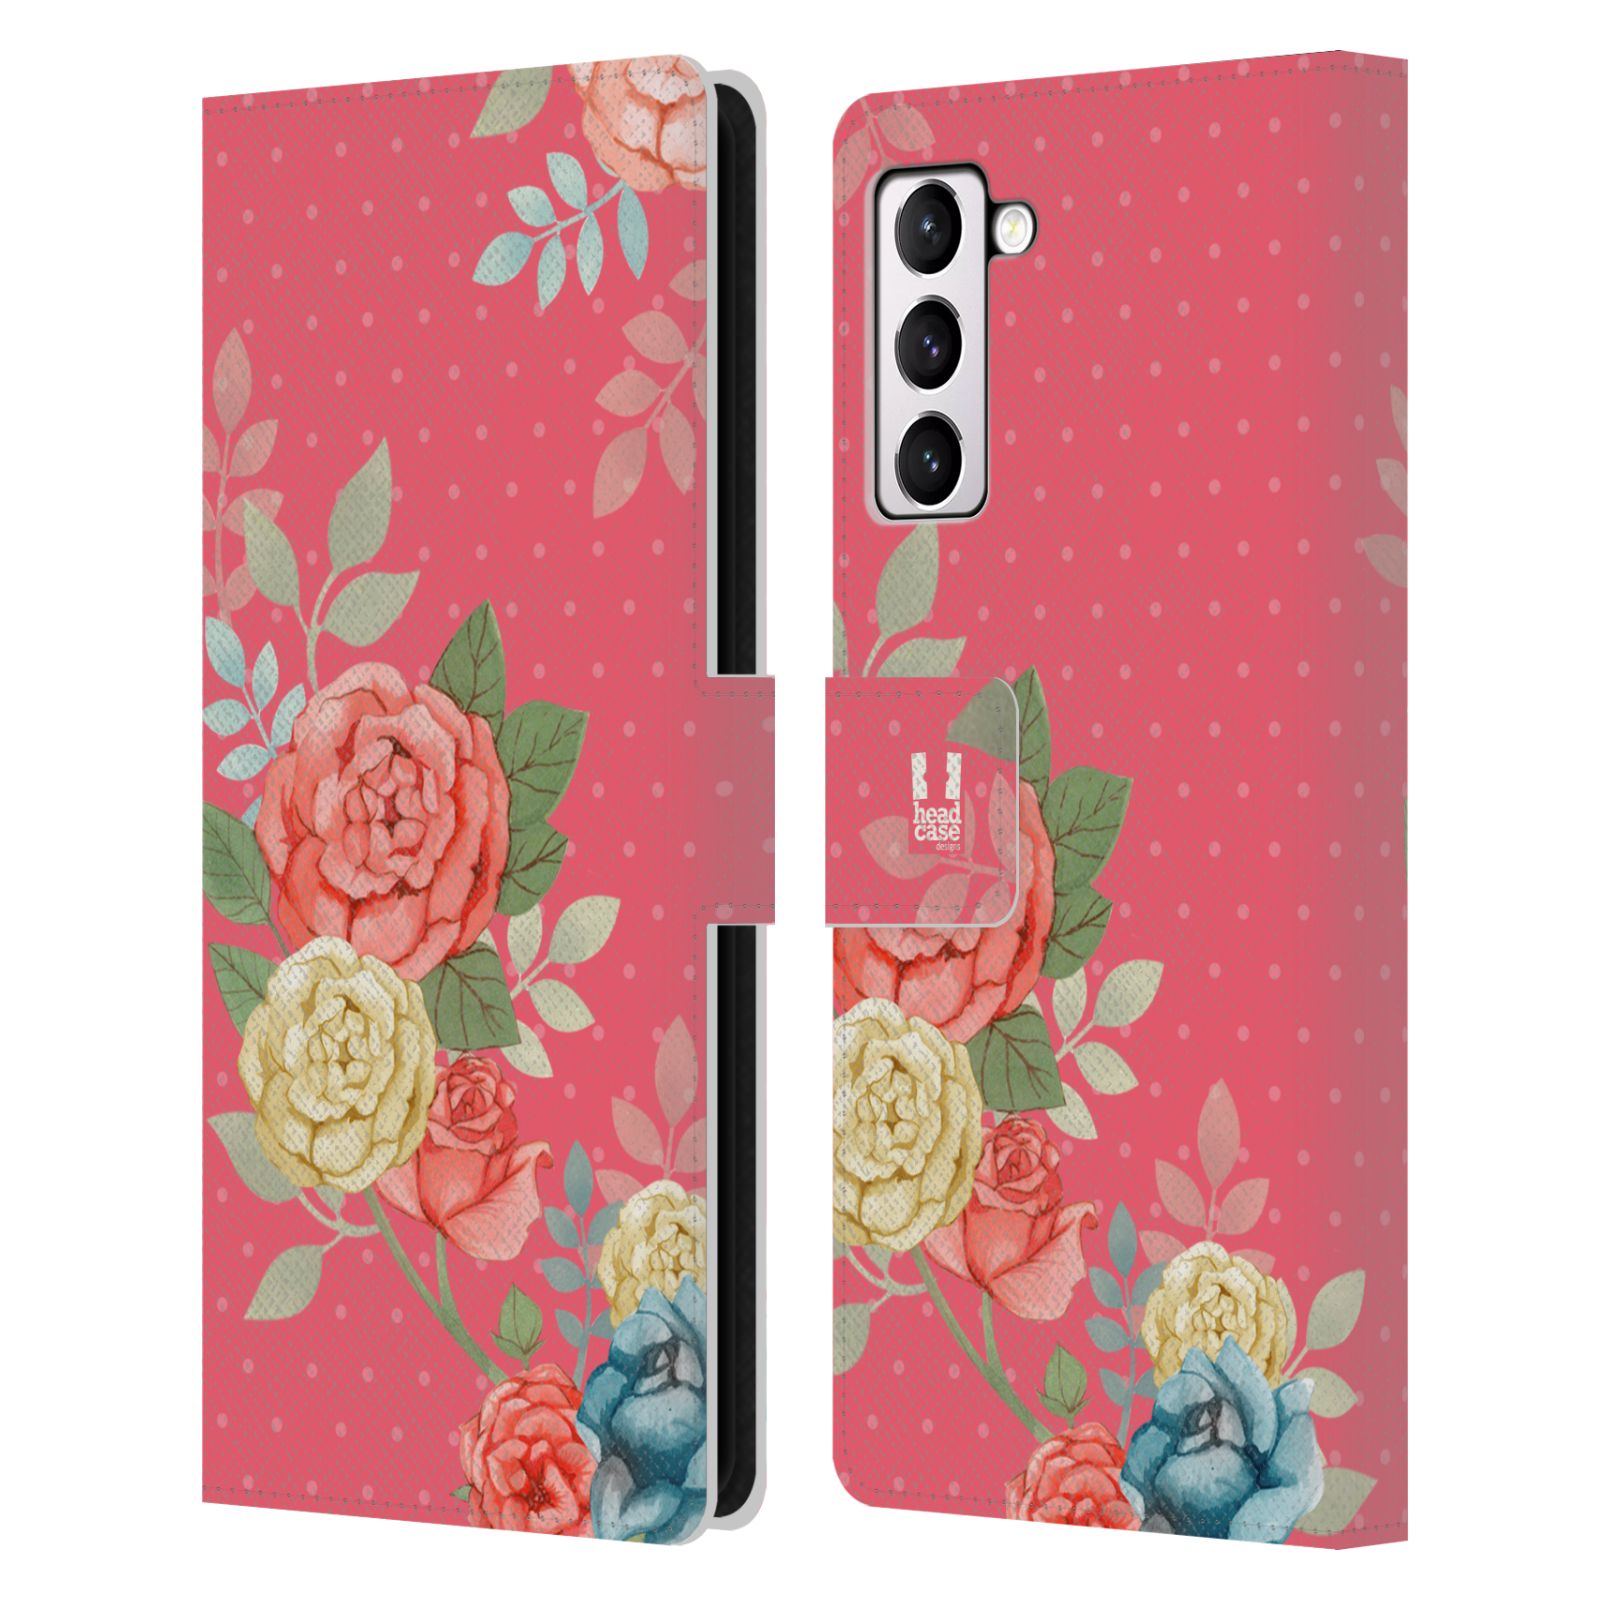 Pouzdro HEAD CASE na mobil Samsung Galaxy S21+ 5G / S21 PLUS 5G romantické květy růžová